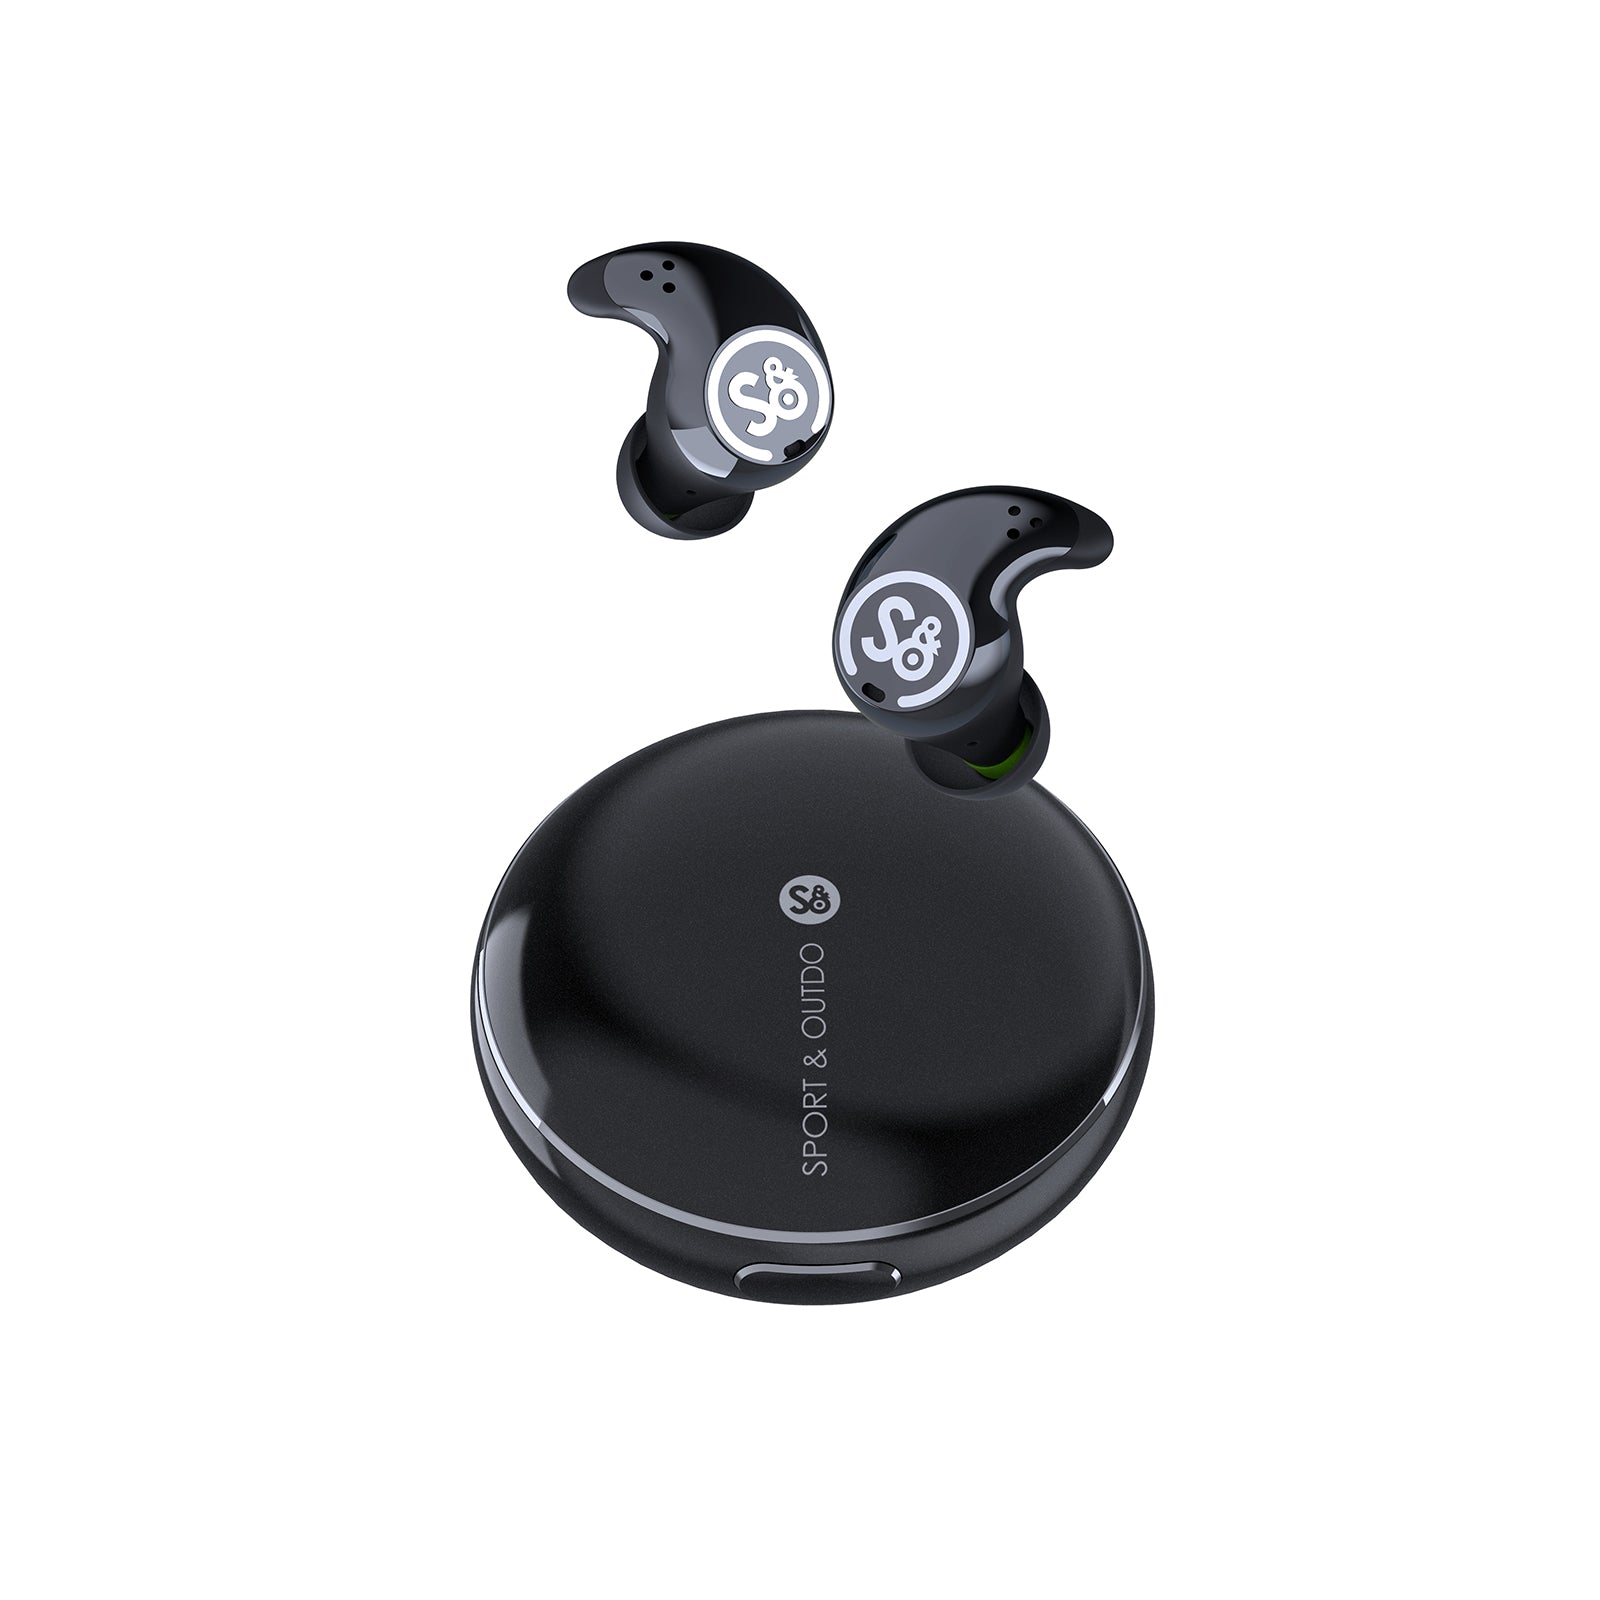 Mifo S Earbuds - Smart Wireless Earbuds